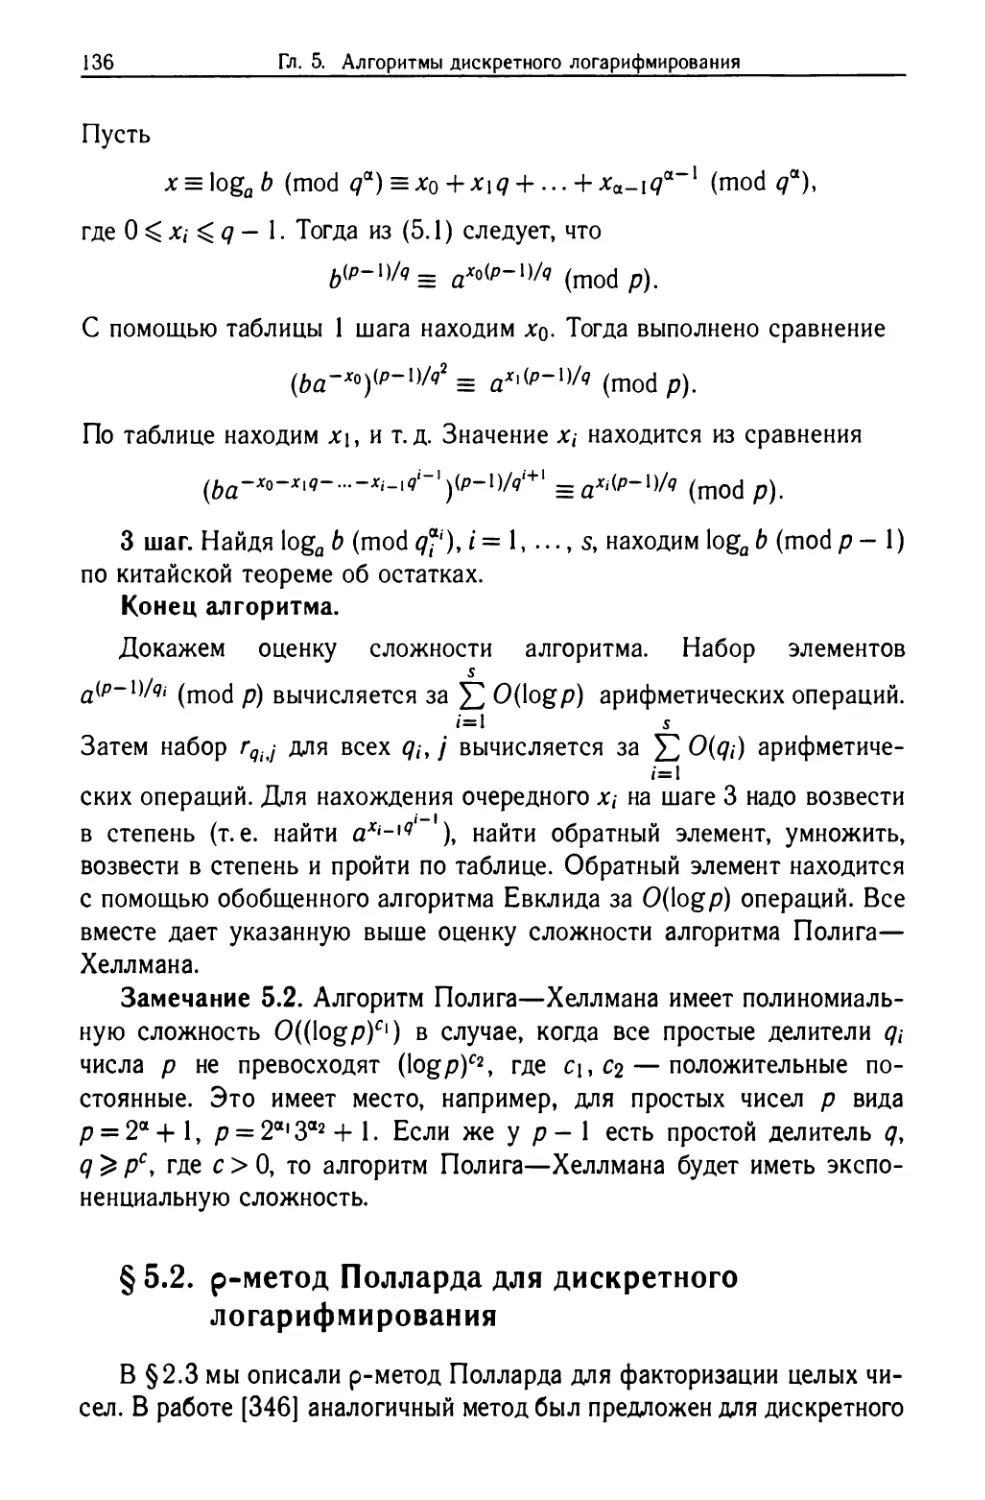 §5.2. ρ-метод Полларда для дискретного логарифмирования